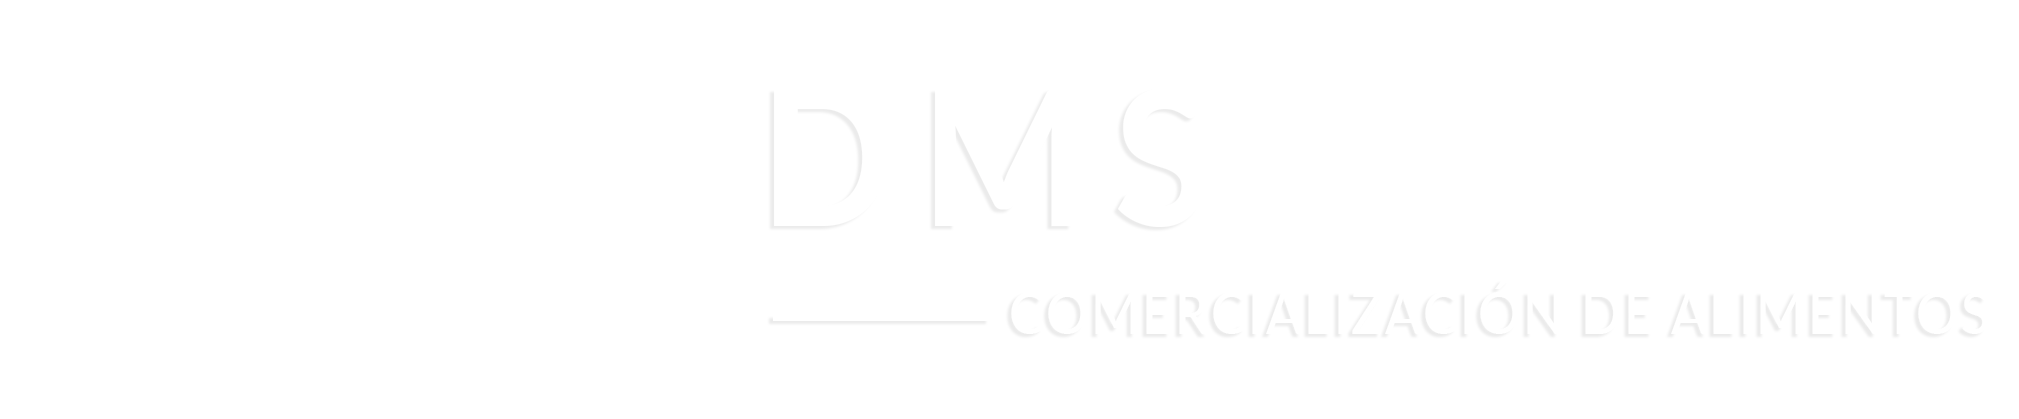 Dms Comercializadora logotipo banner